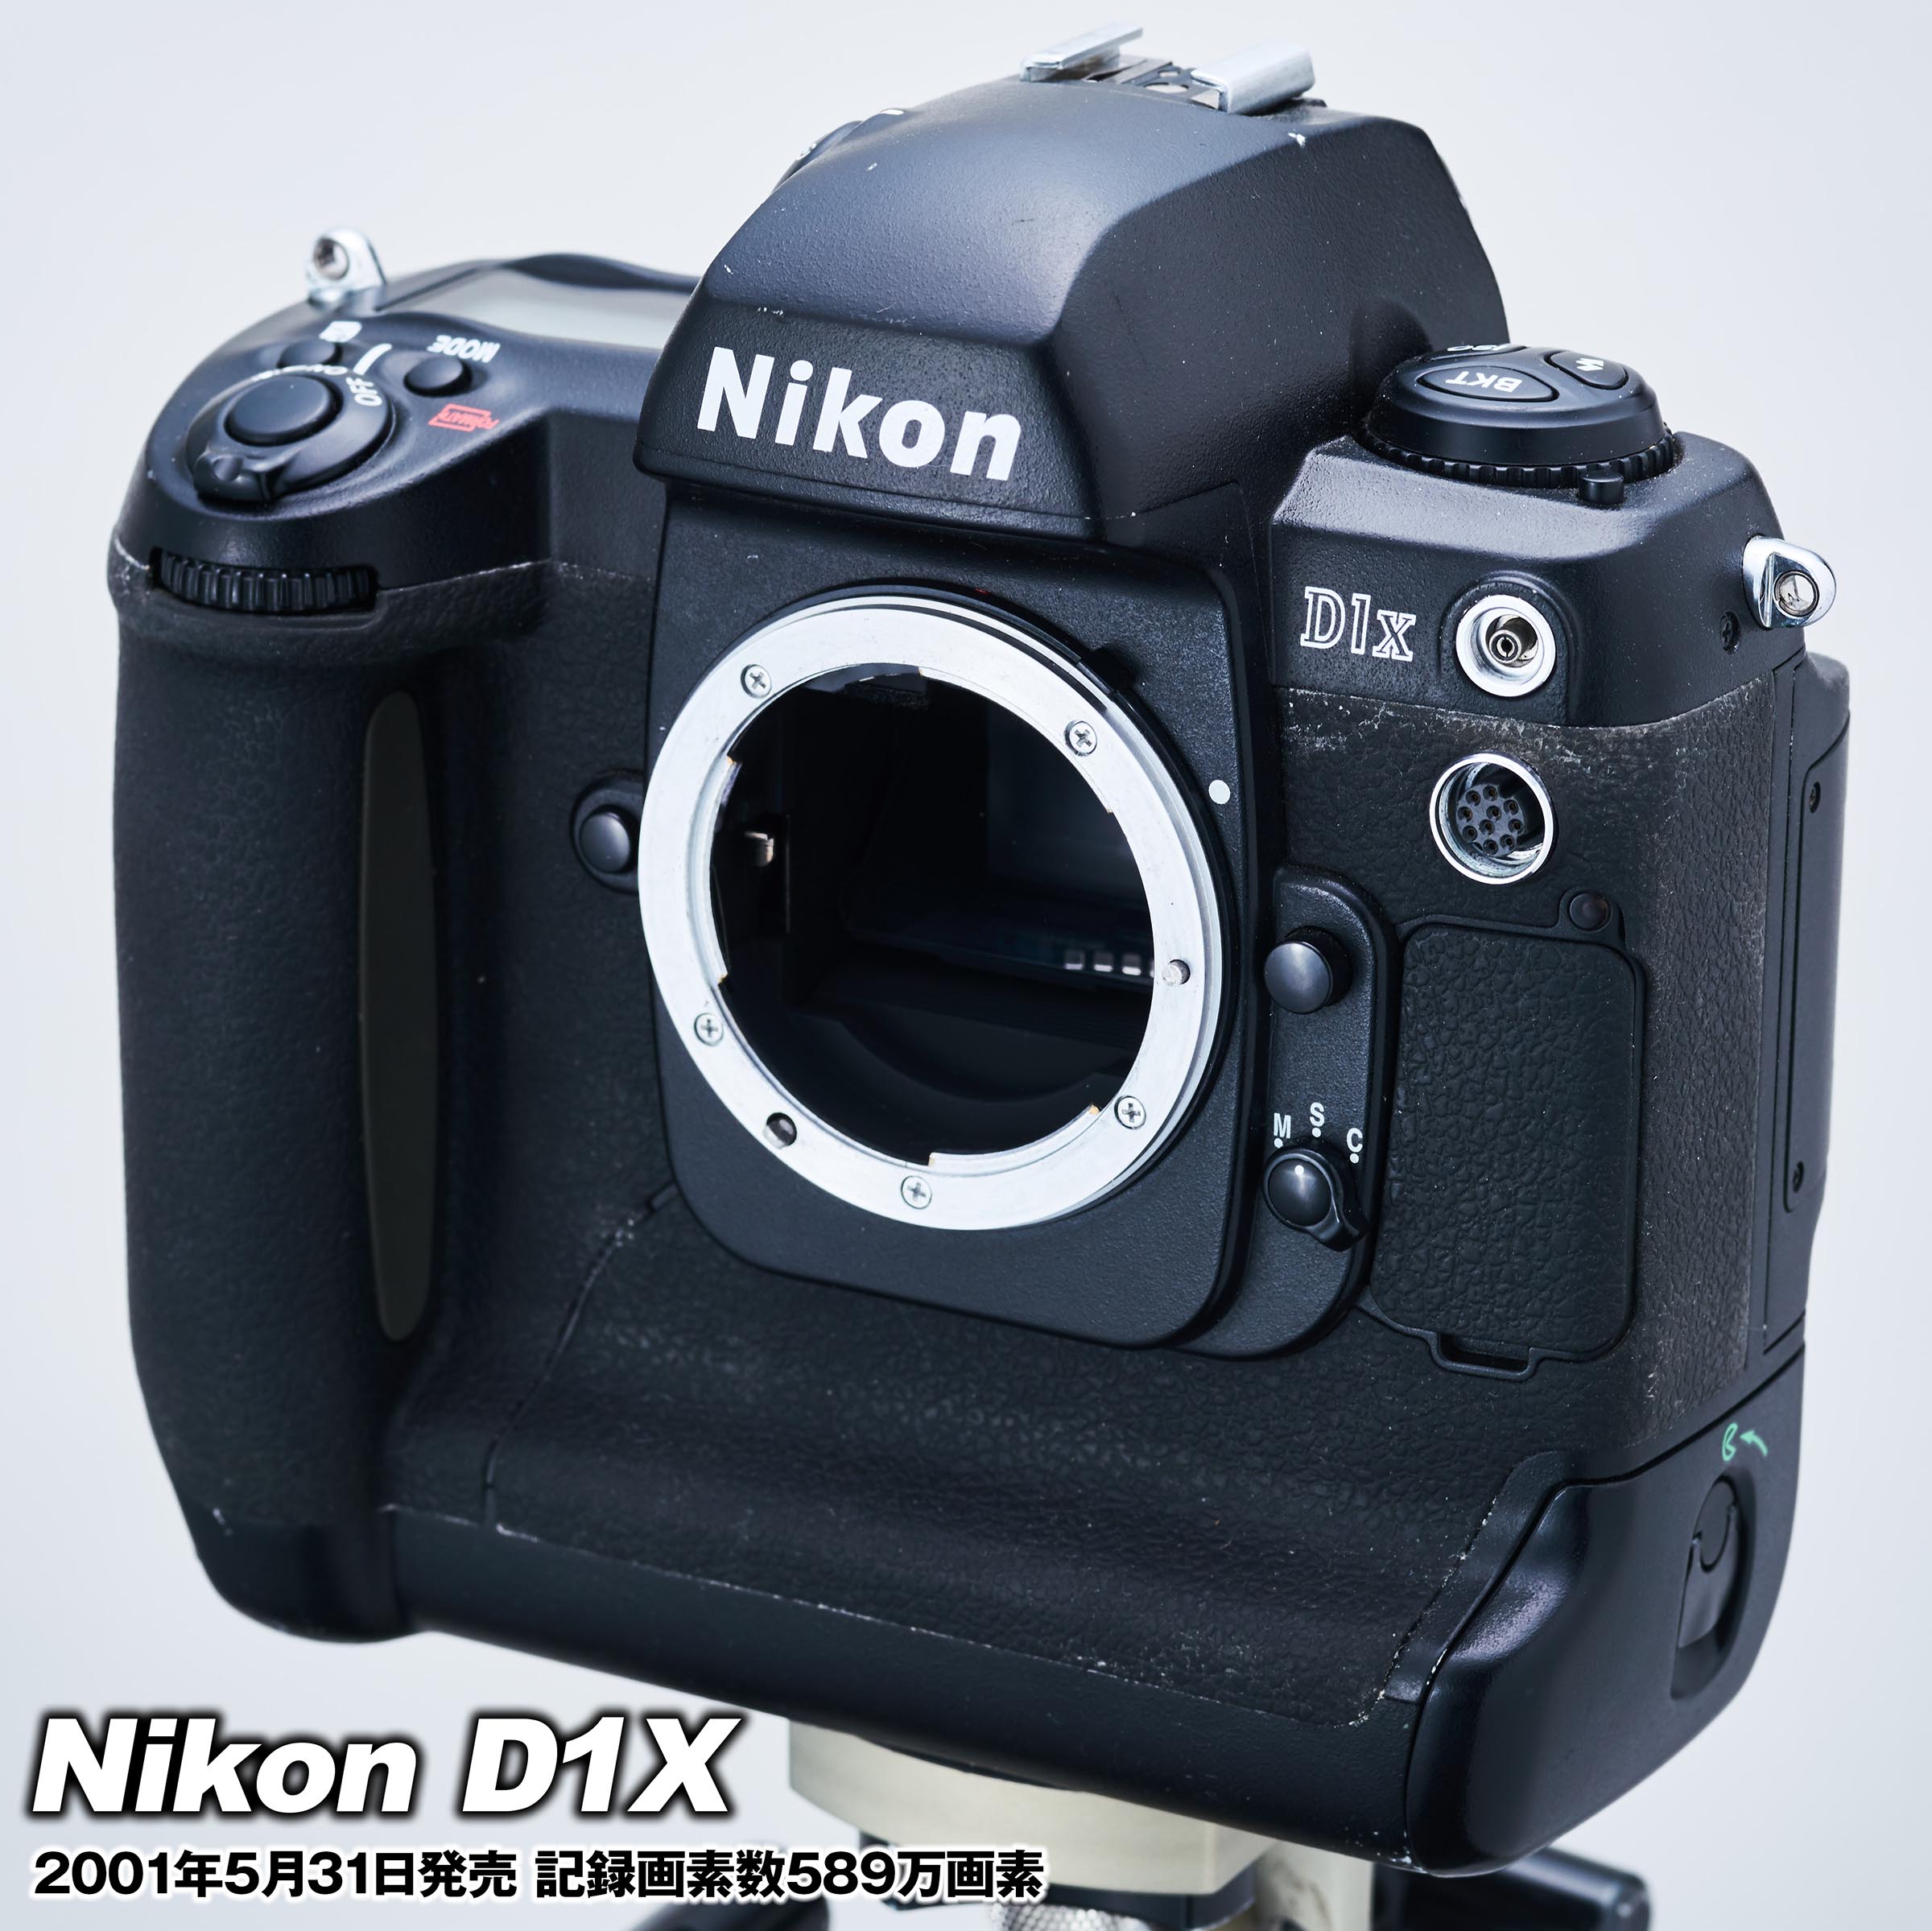 Nikon D1X ボディ | omundoeoseular.com.br